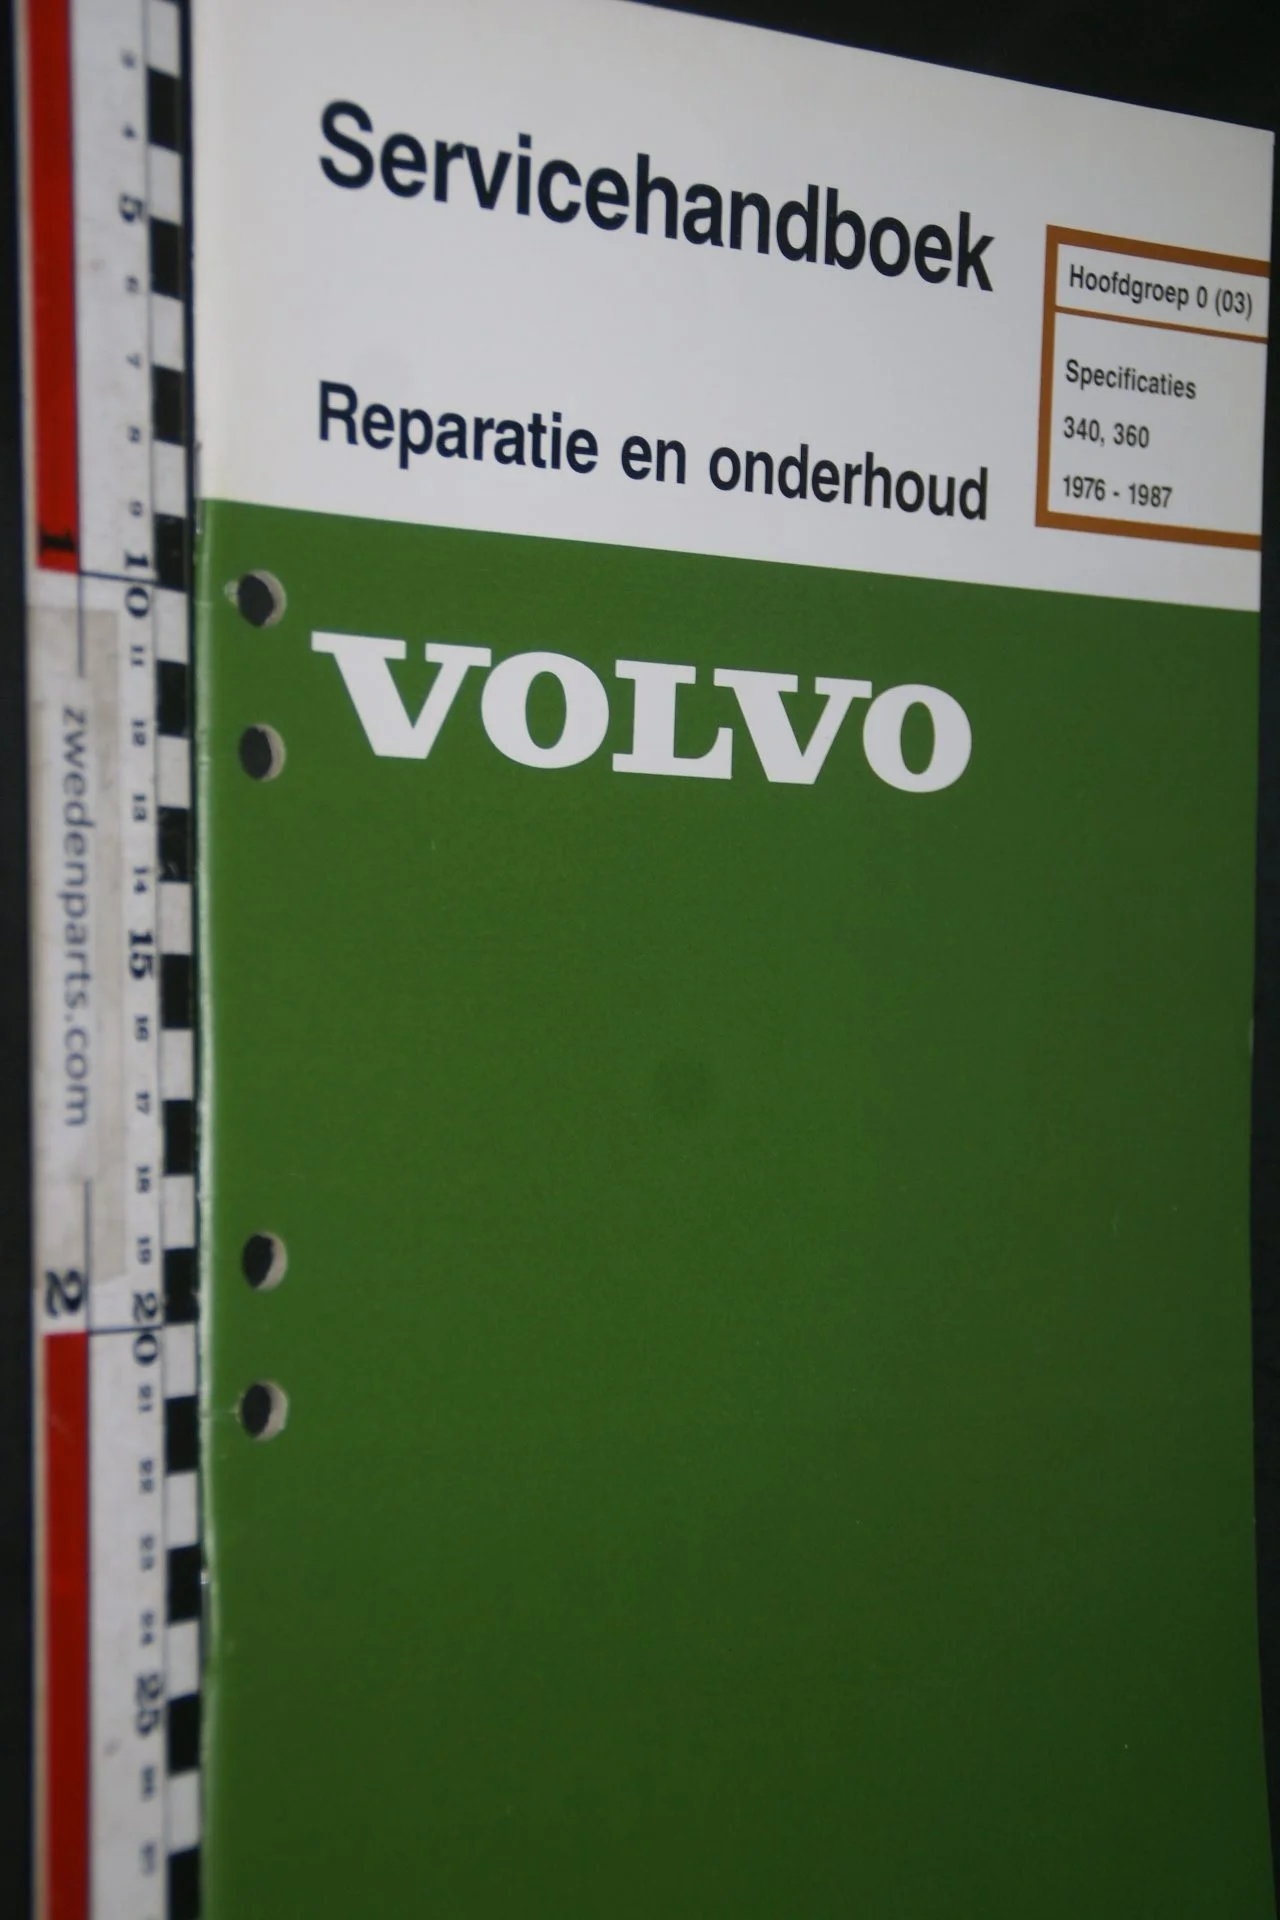 DSC06820 1986 origineel Volvo 340.360 servicehandboek 0 (03)  specificaties 1 van 700 TP 35028-8